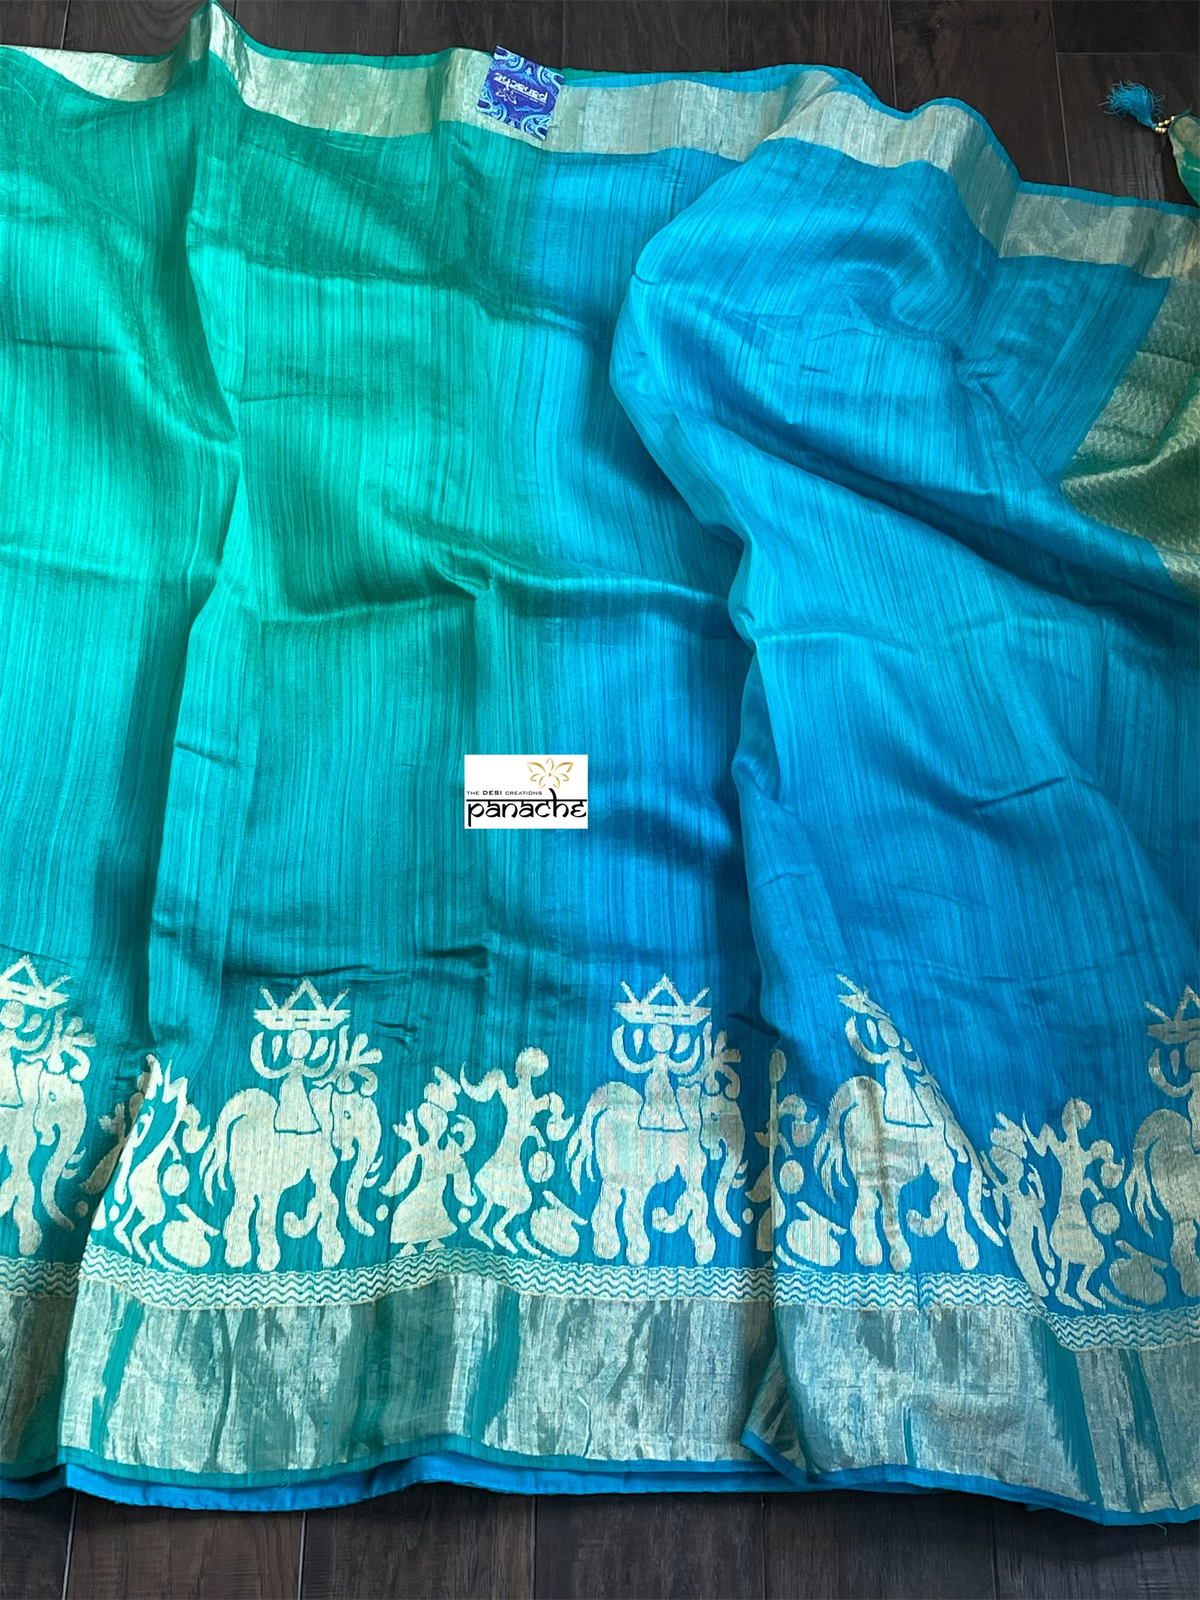 Raw Silk Banarasi - Firozi Blue Sea Green Shaded